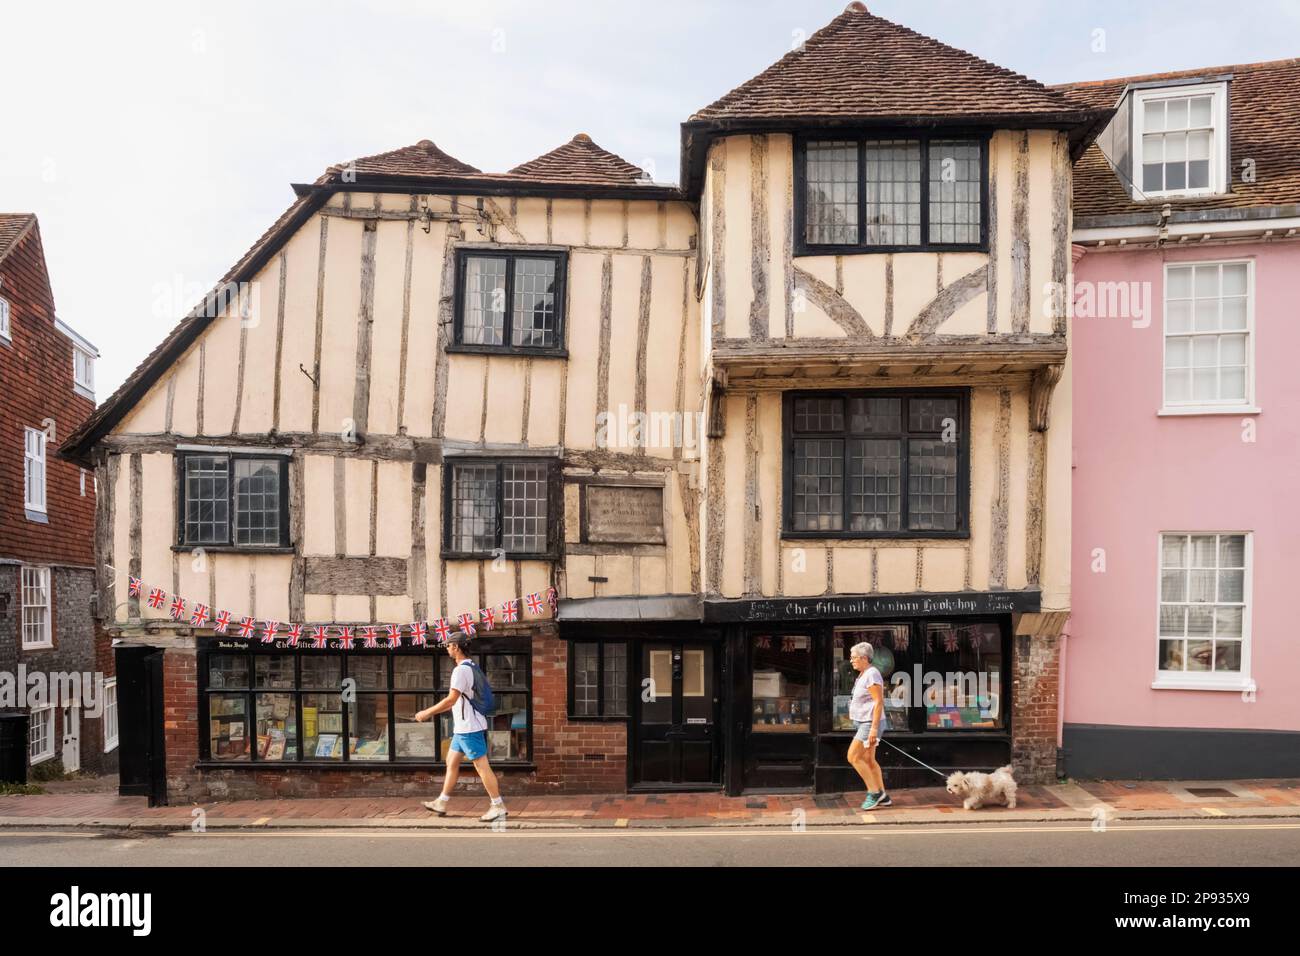 Angleterre, East Sussex, Lewes, librairie du quinzième siècle Banque D'Images